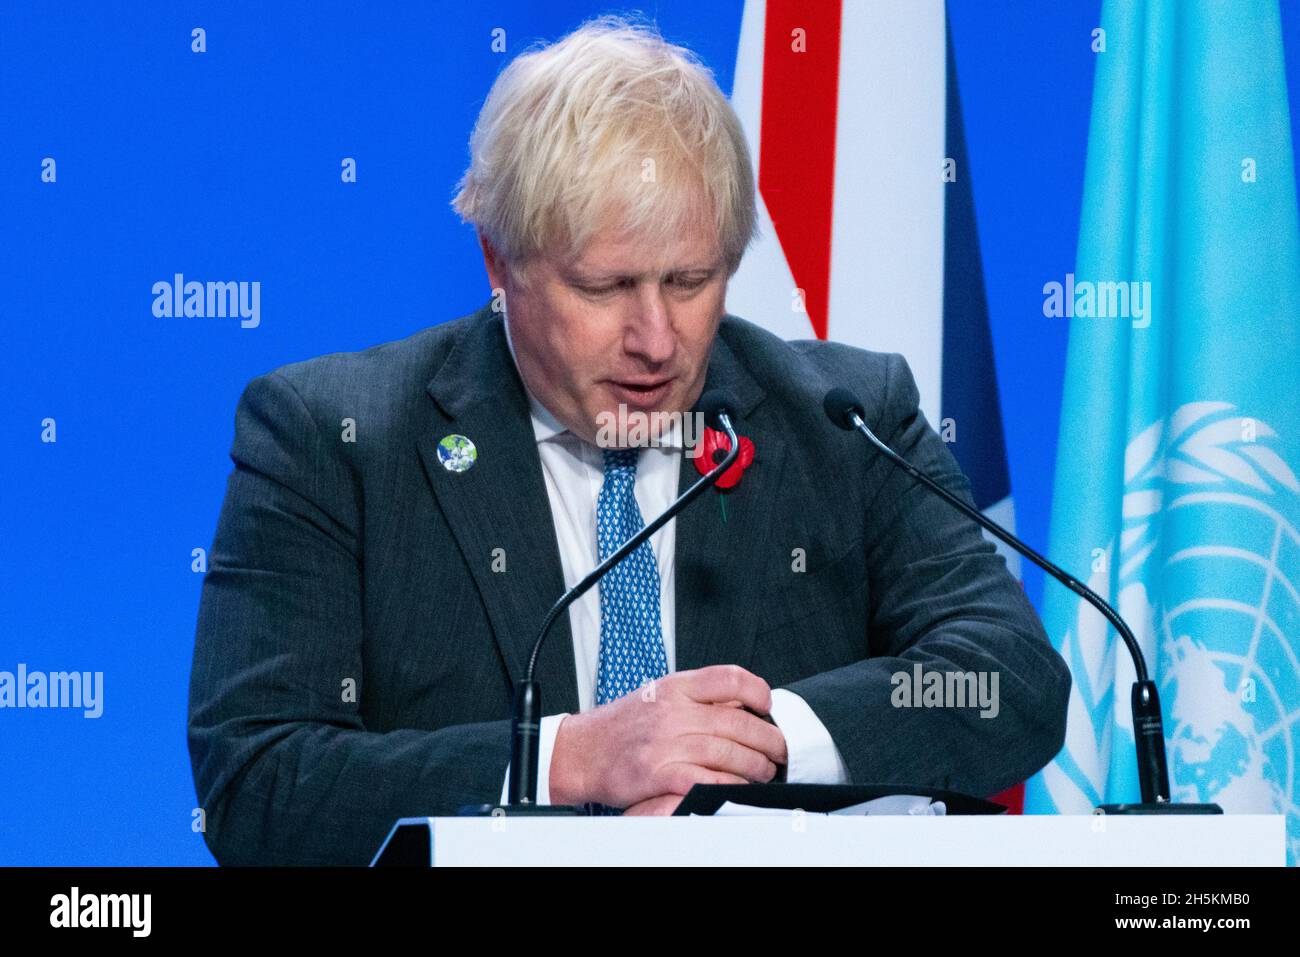 Glasgow, Schottland, Großbritannien. November 2021. Tag elf des Klimagipfels und Premierminister Boris Johnson sprechen bei einer Pressekonferenz mit britischen Medien. Iain Masterton/Alamy Live News. Stockfoto